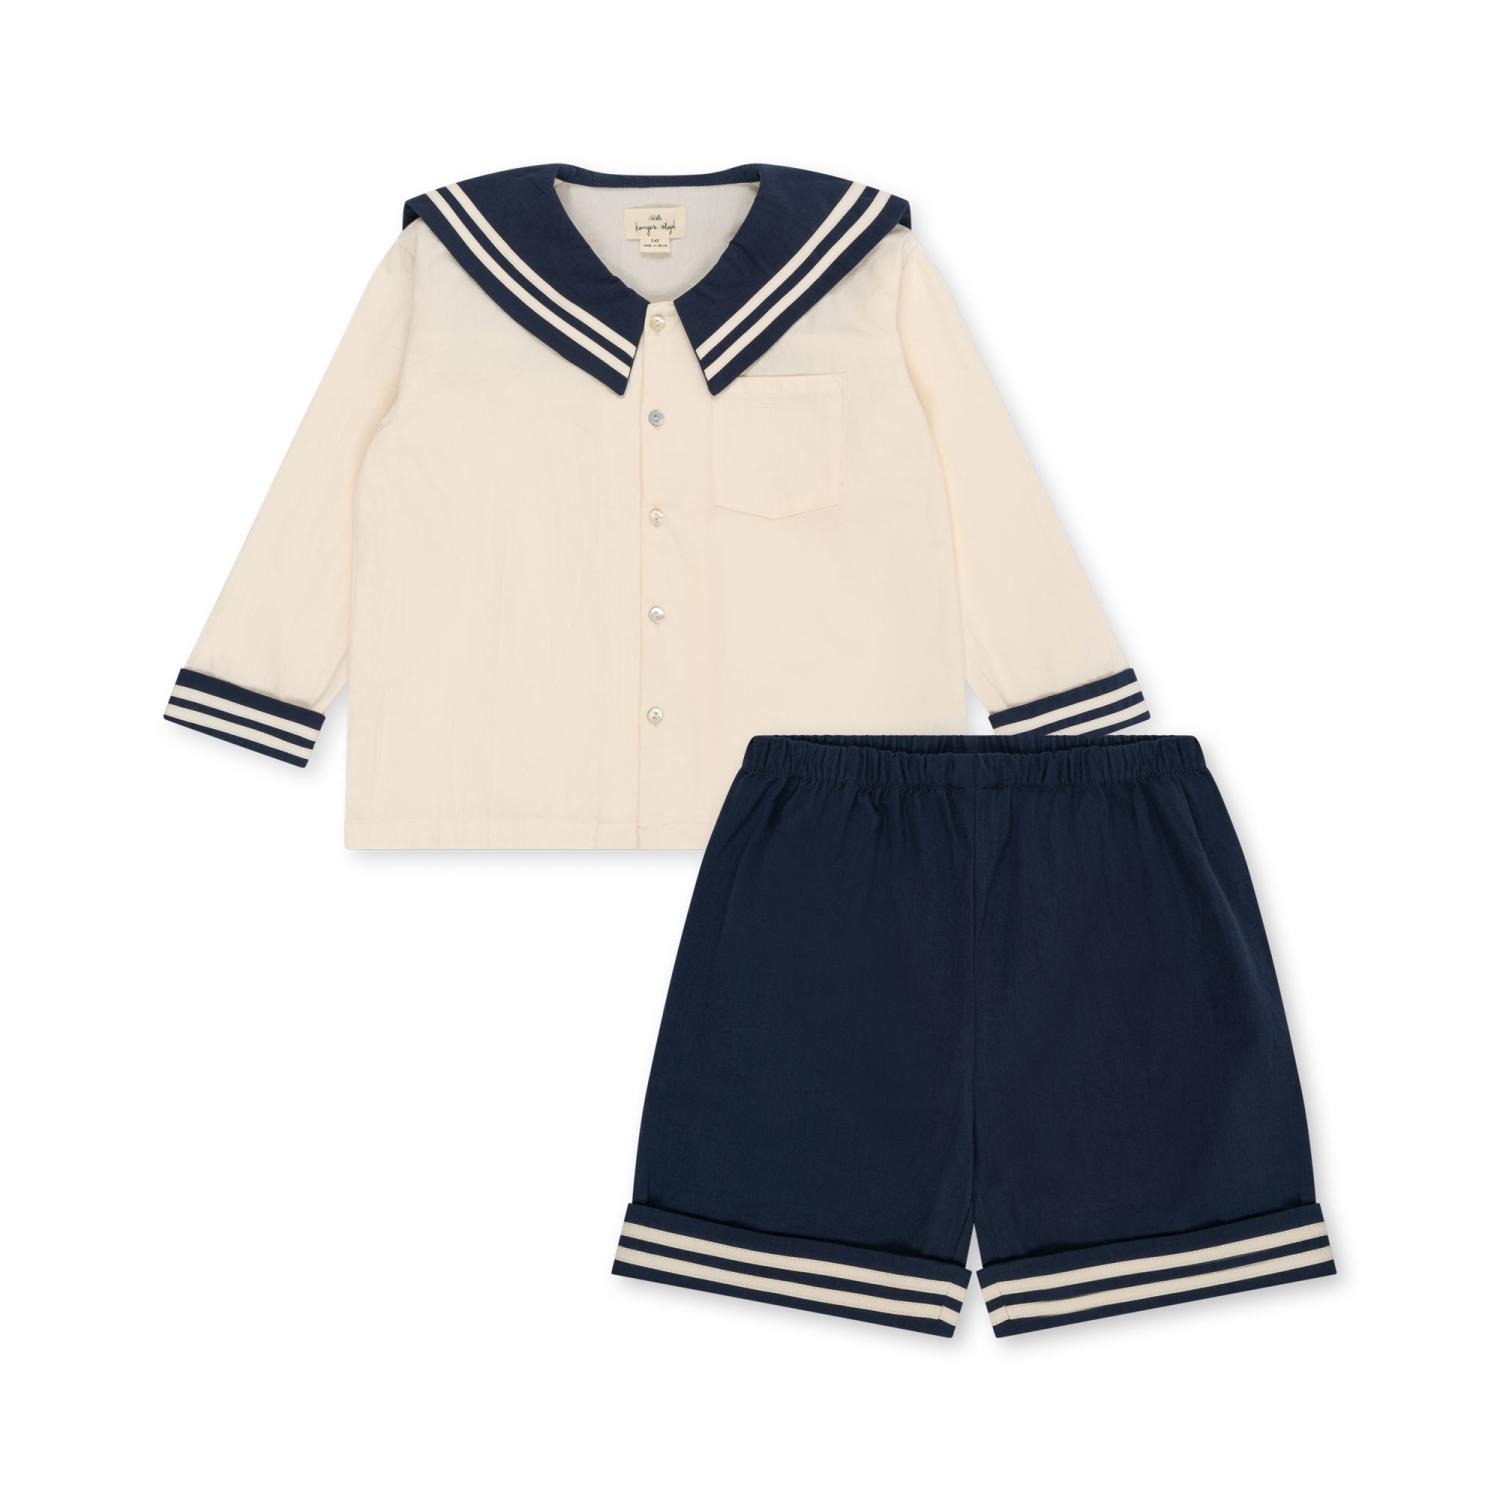 Sailor uniform, Dress blues